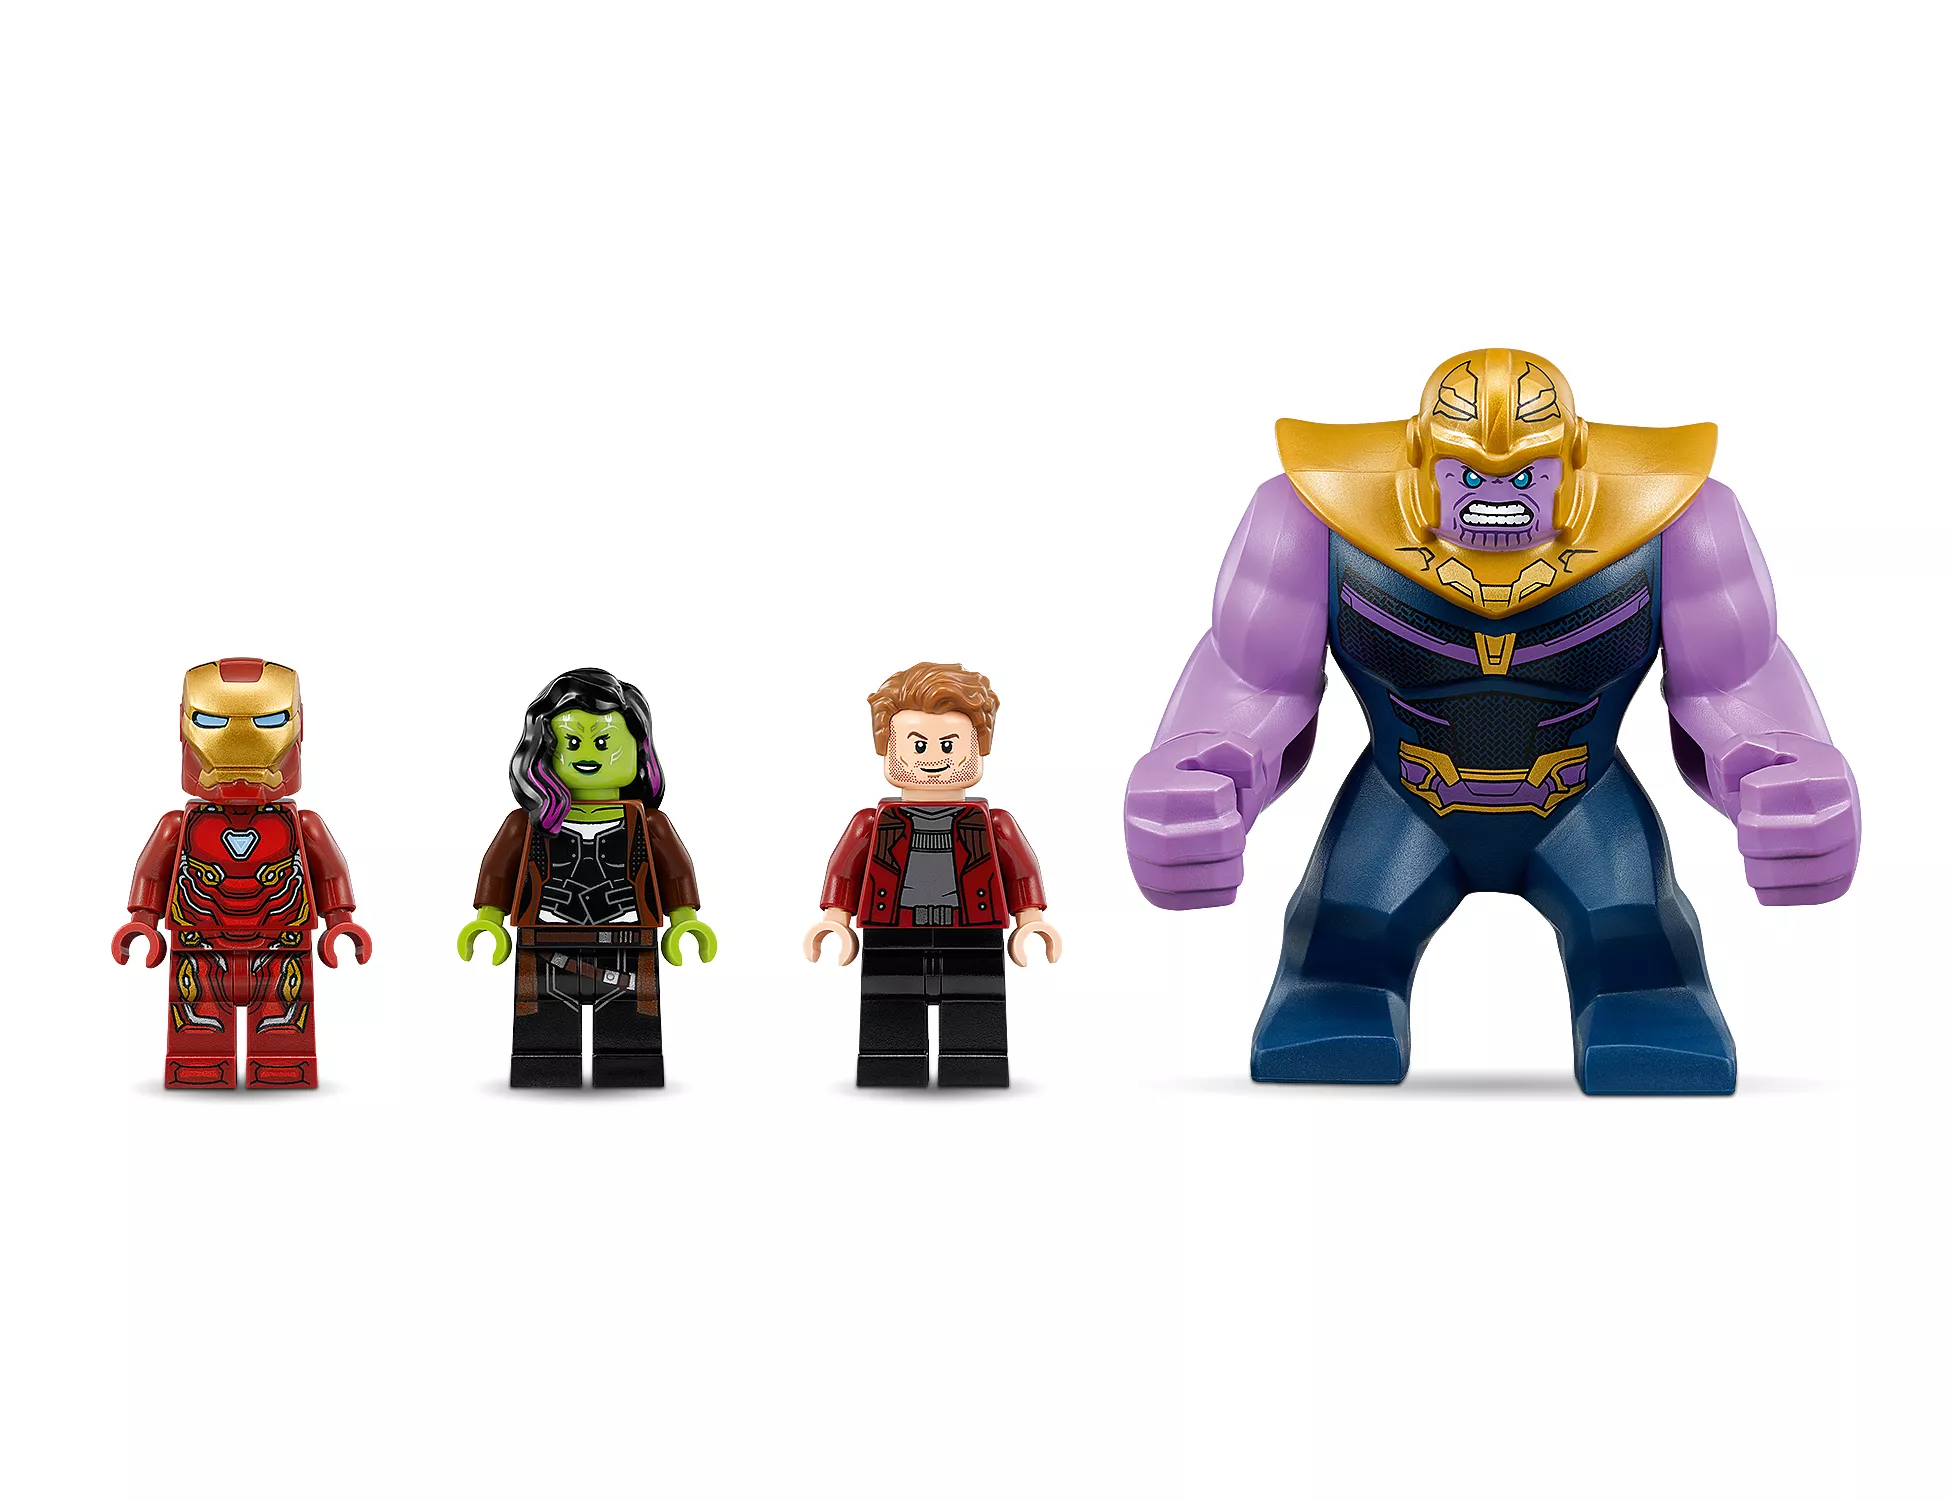 LEGO Marvel Super Heroes Thanos: Das ultimative Gefecht - 76107